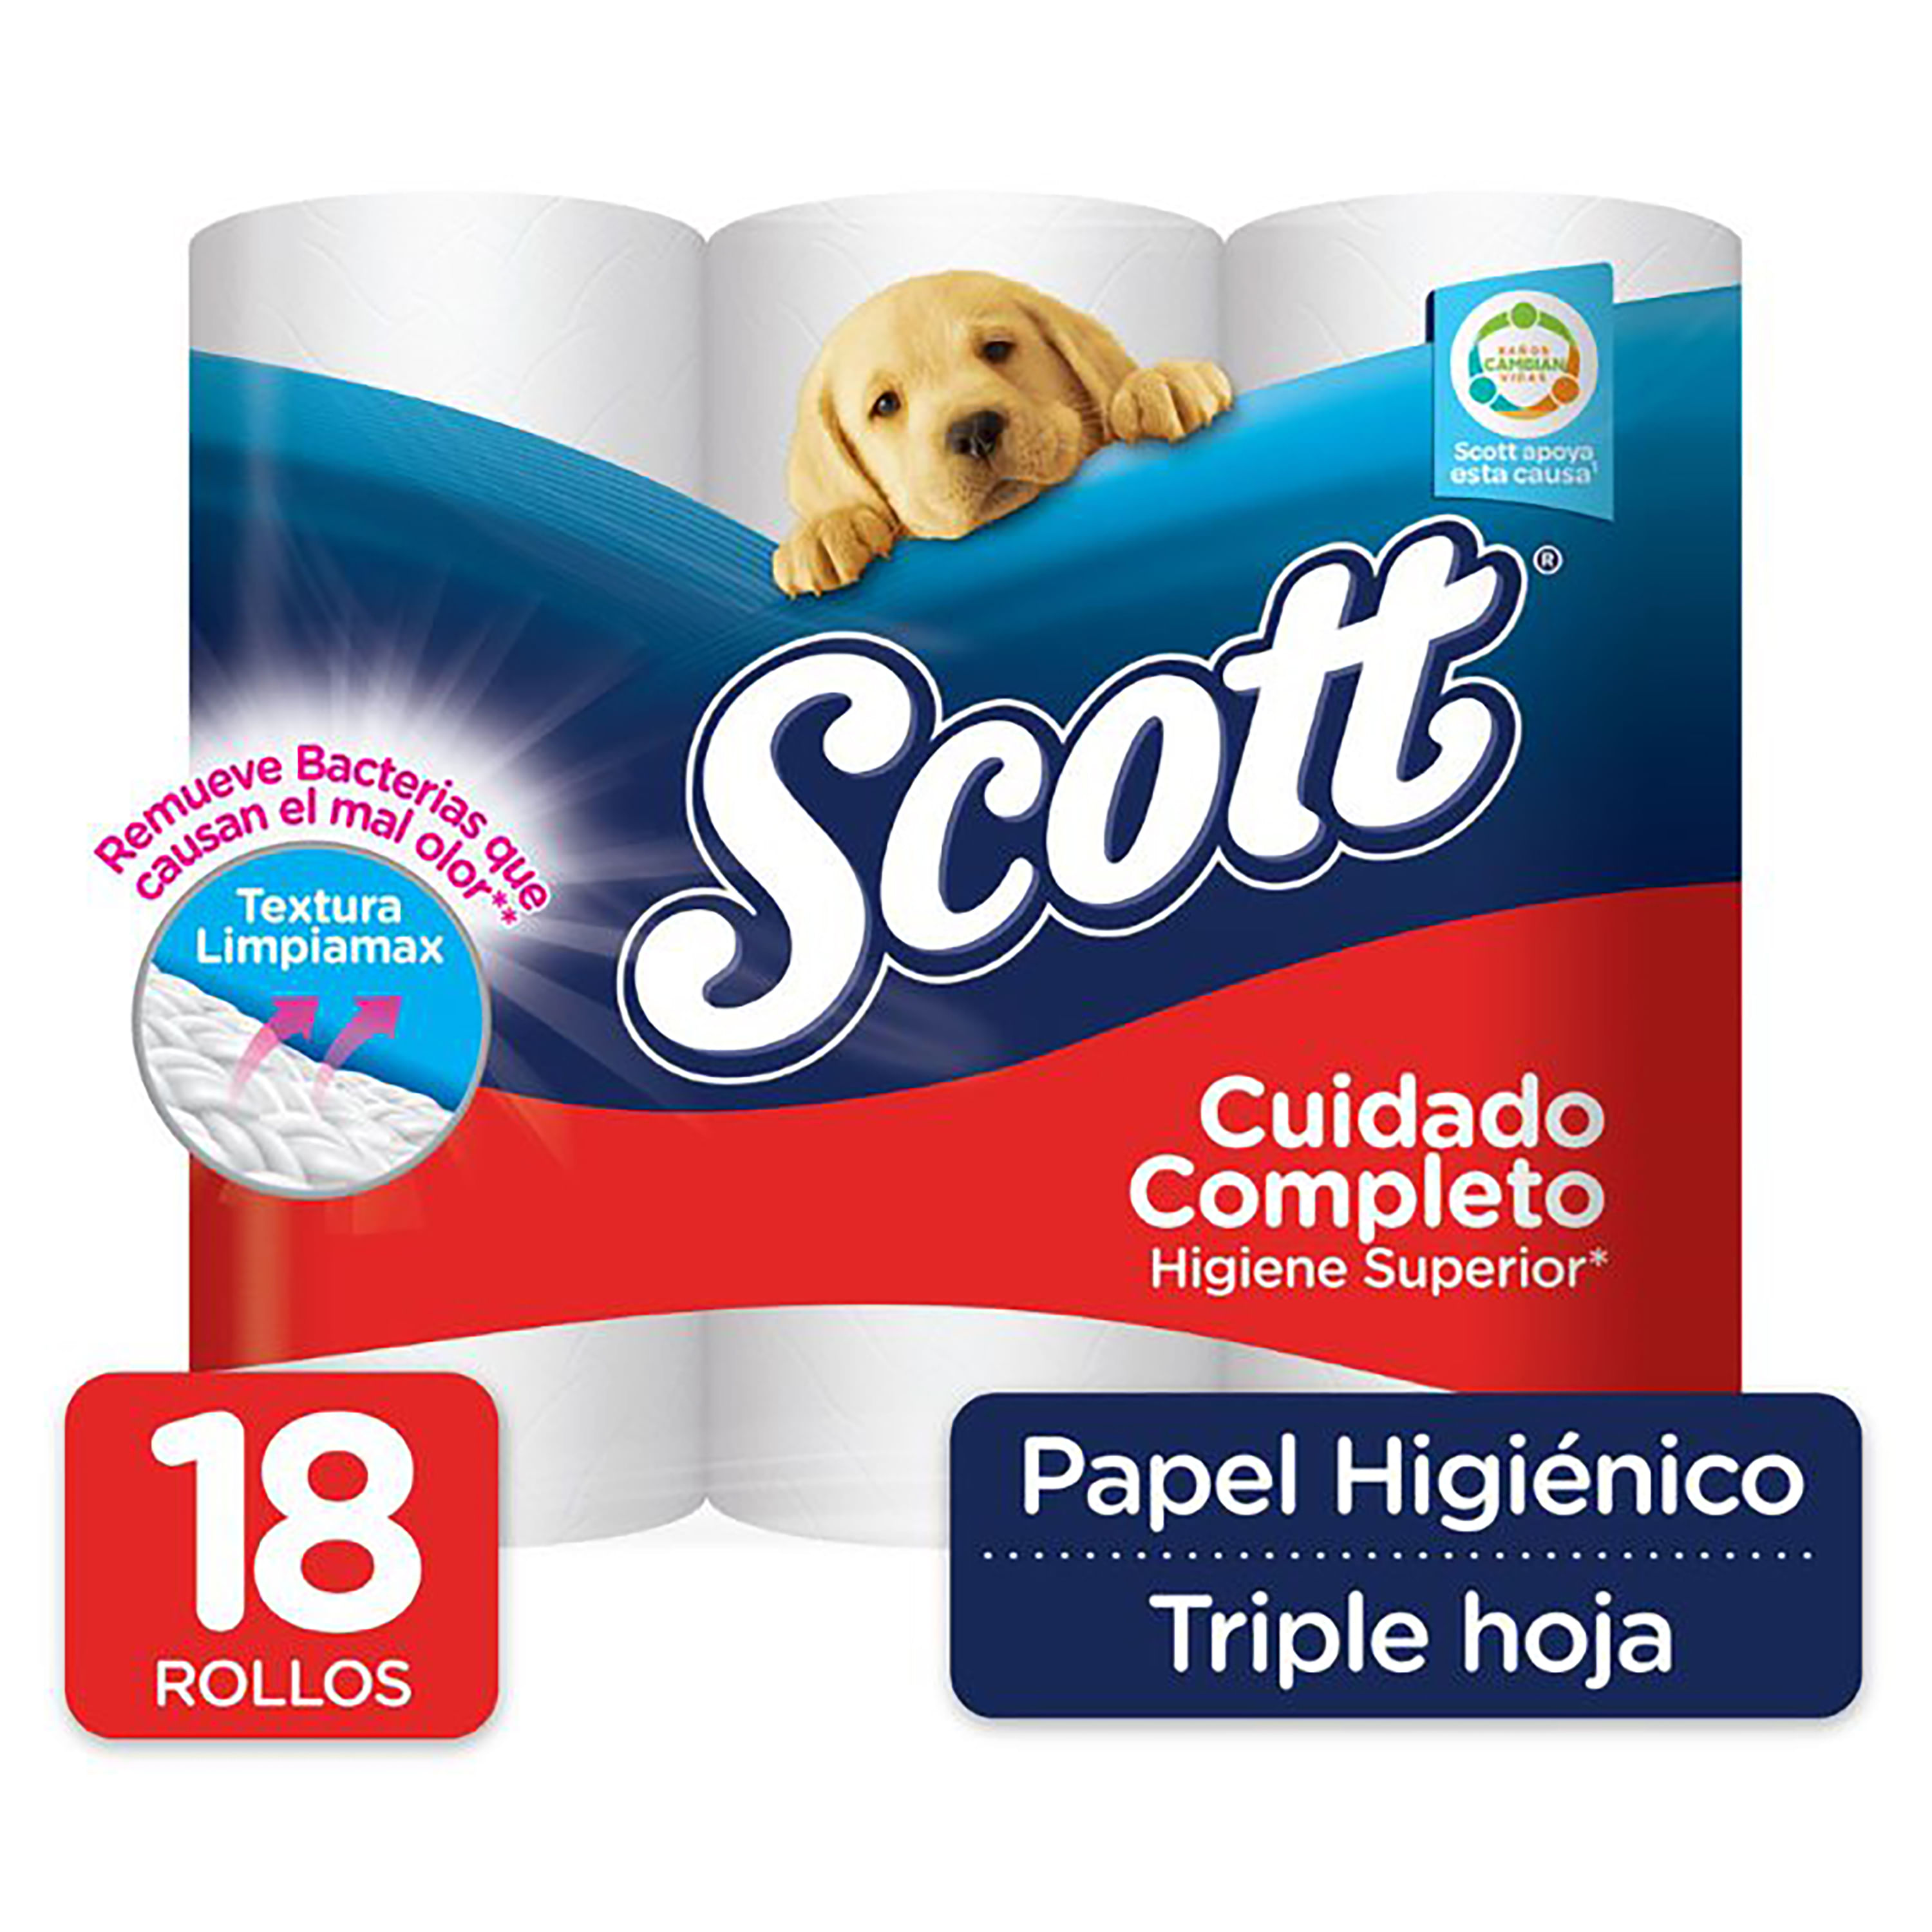 Scottex Sensitive Papel Higiénico - 42 rollos por 14,92€